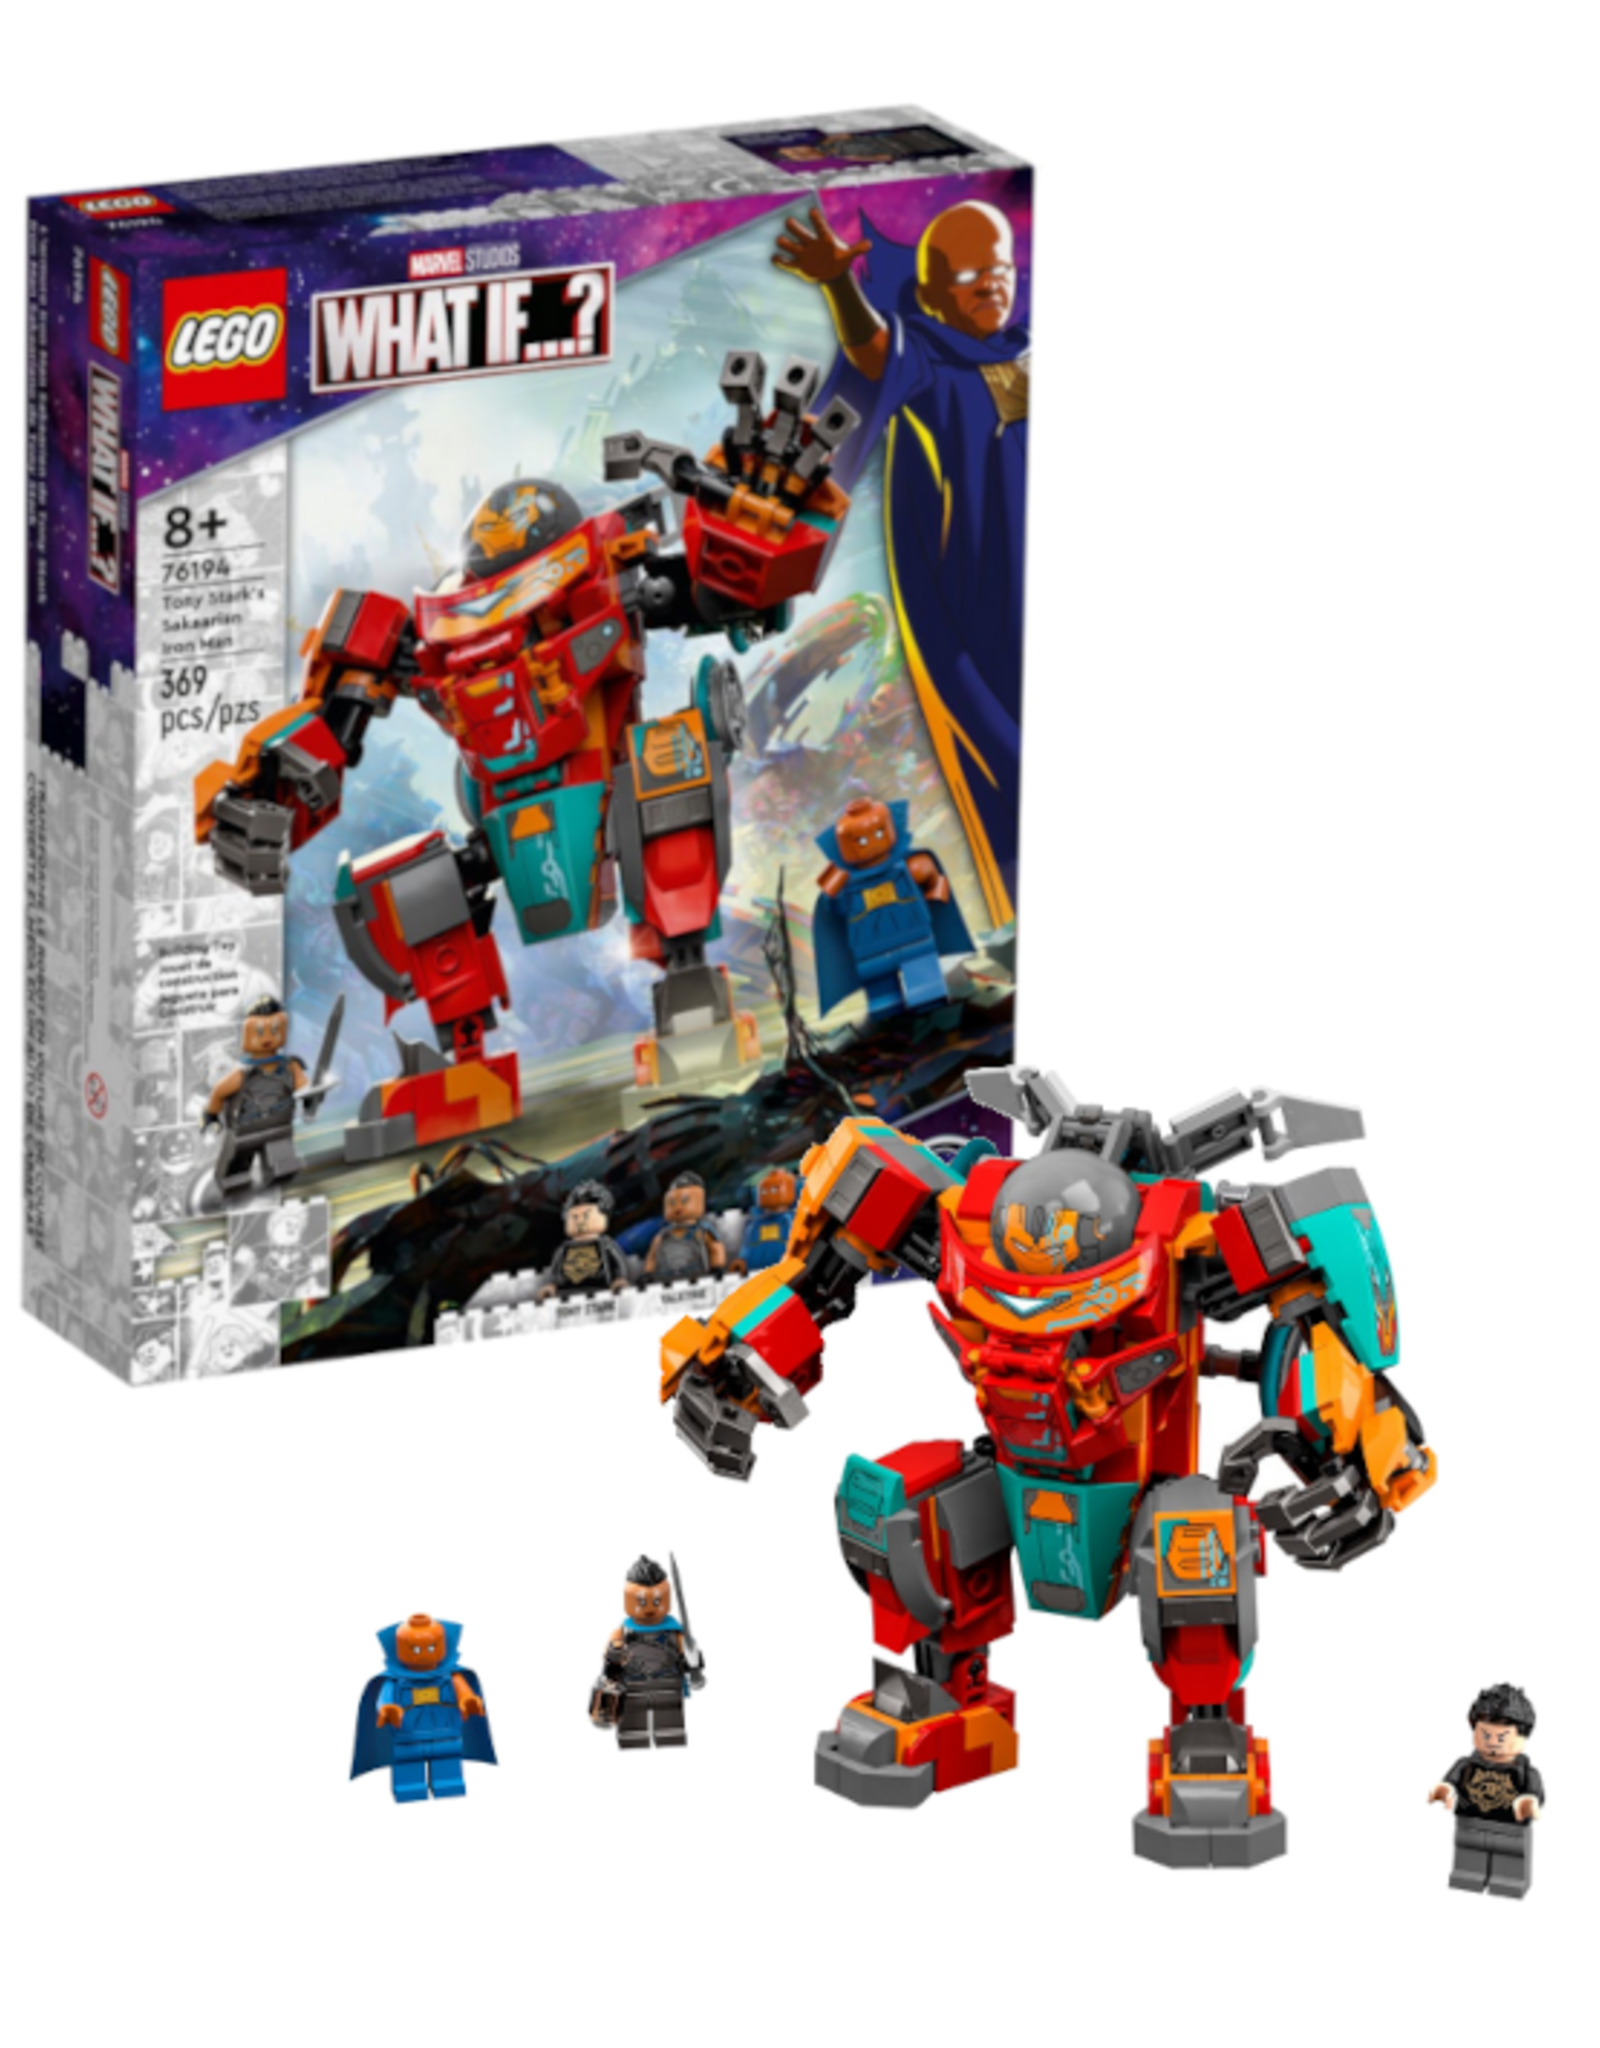 Lego Lego - Marvel - 76194 - Tony Stark's Sakaarian Iron Man